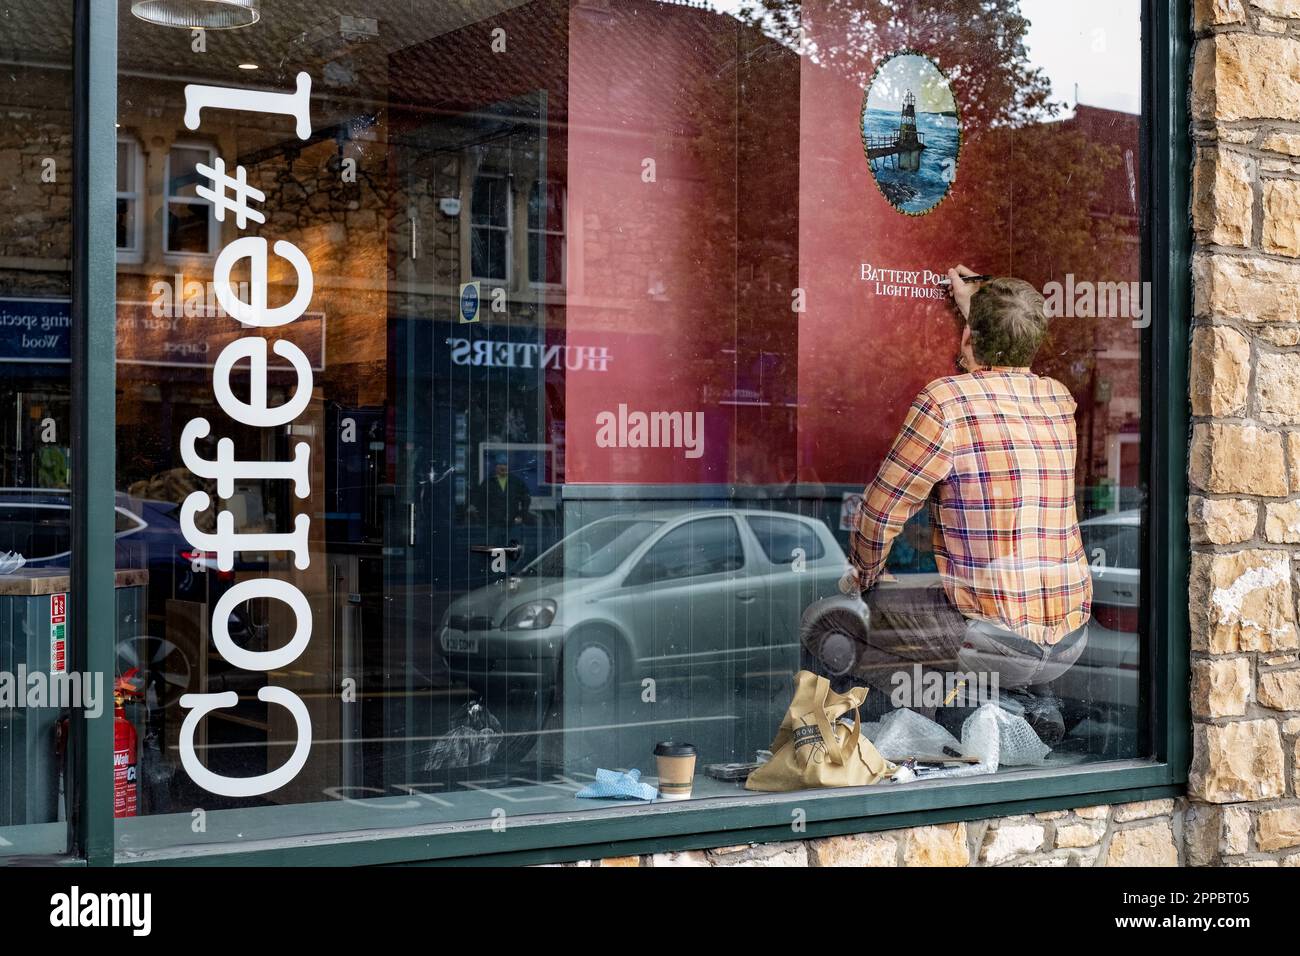 Un artista y escritor de letreros agrega algunos enlaces locales a un nuevo café no 1 que se instala en la tienda antes de la apertura. Coffee#1 es una cadena de café del reino unido Foto de stock